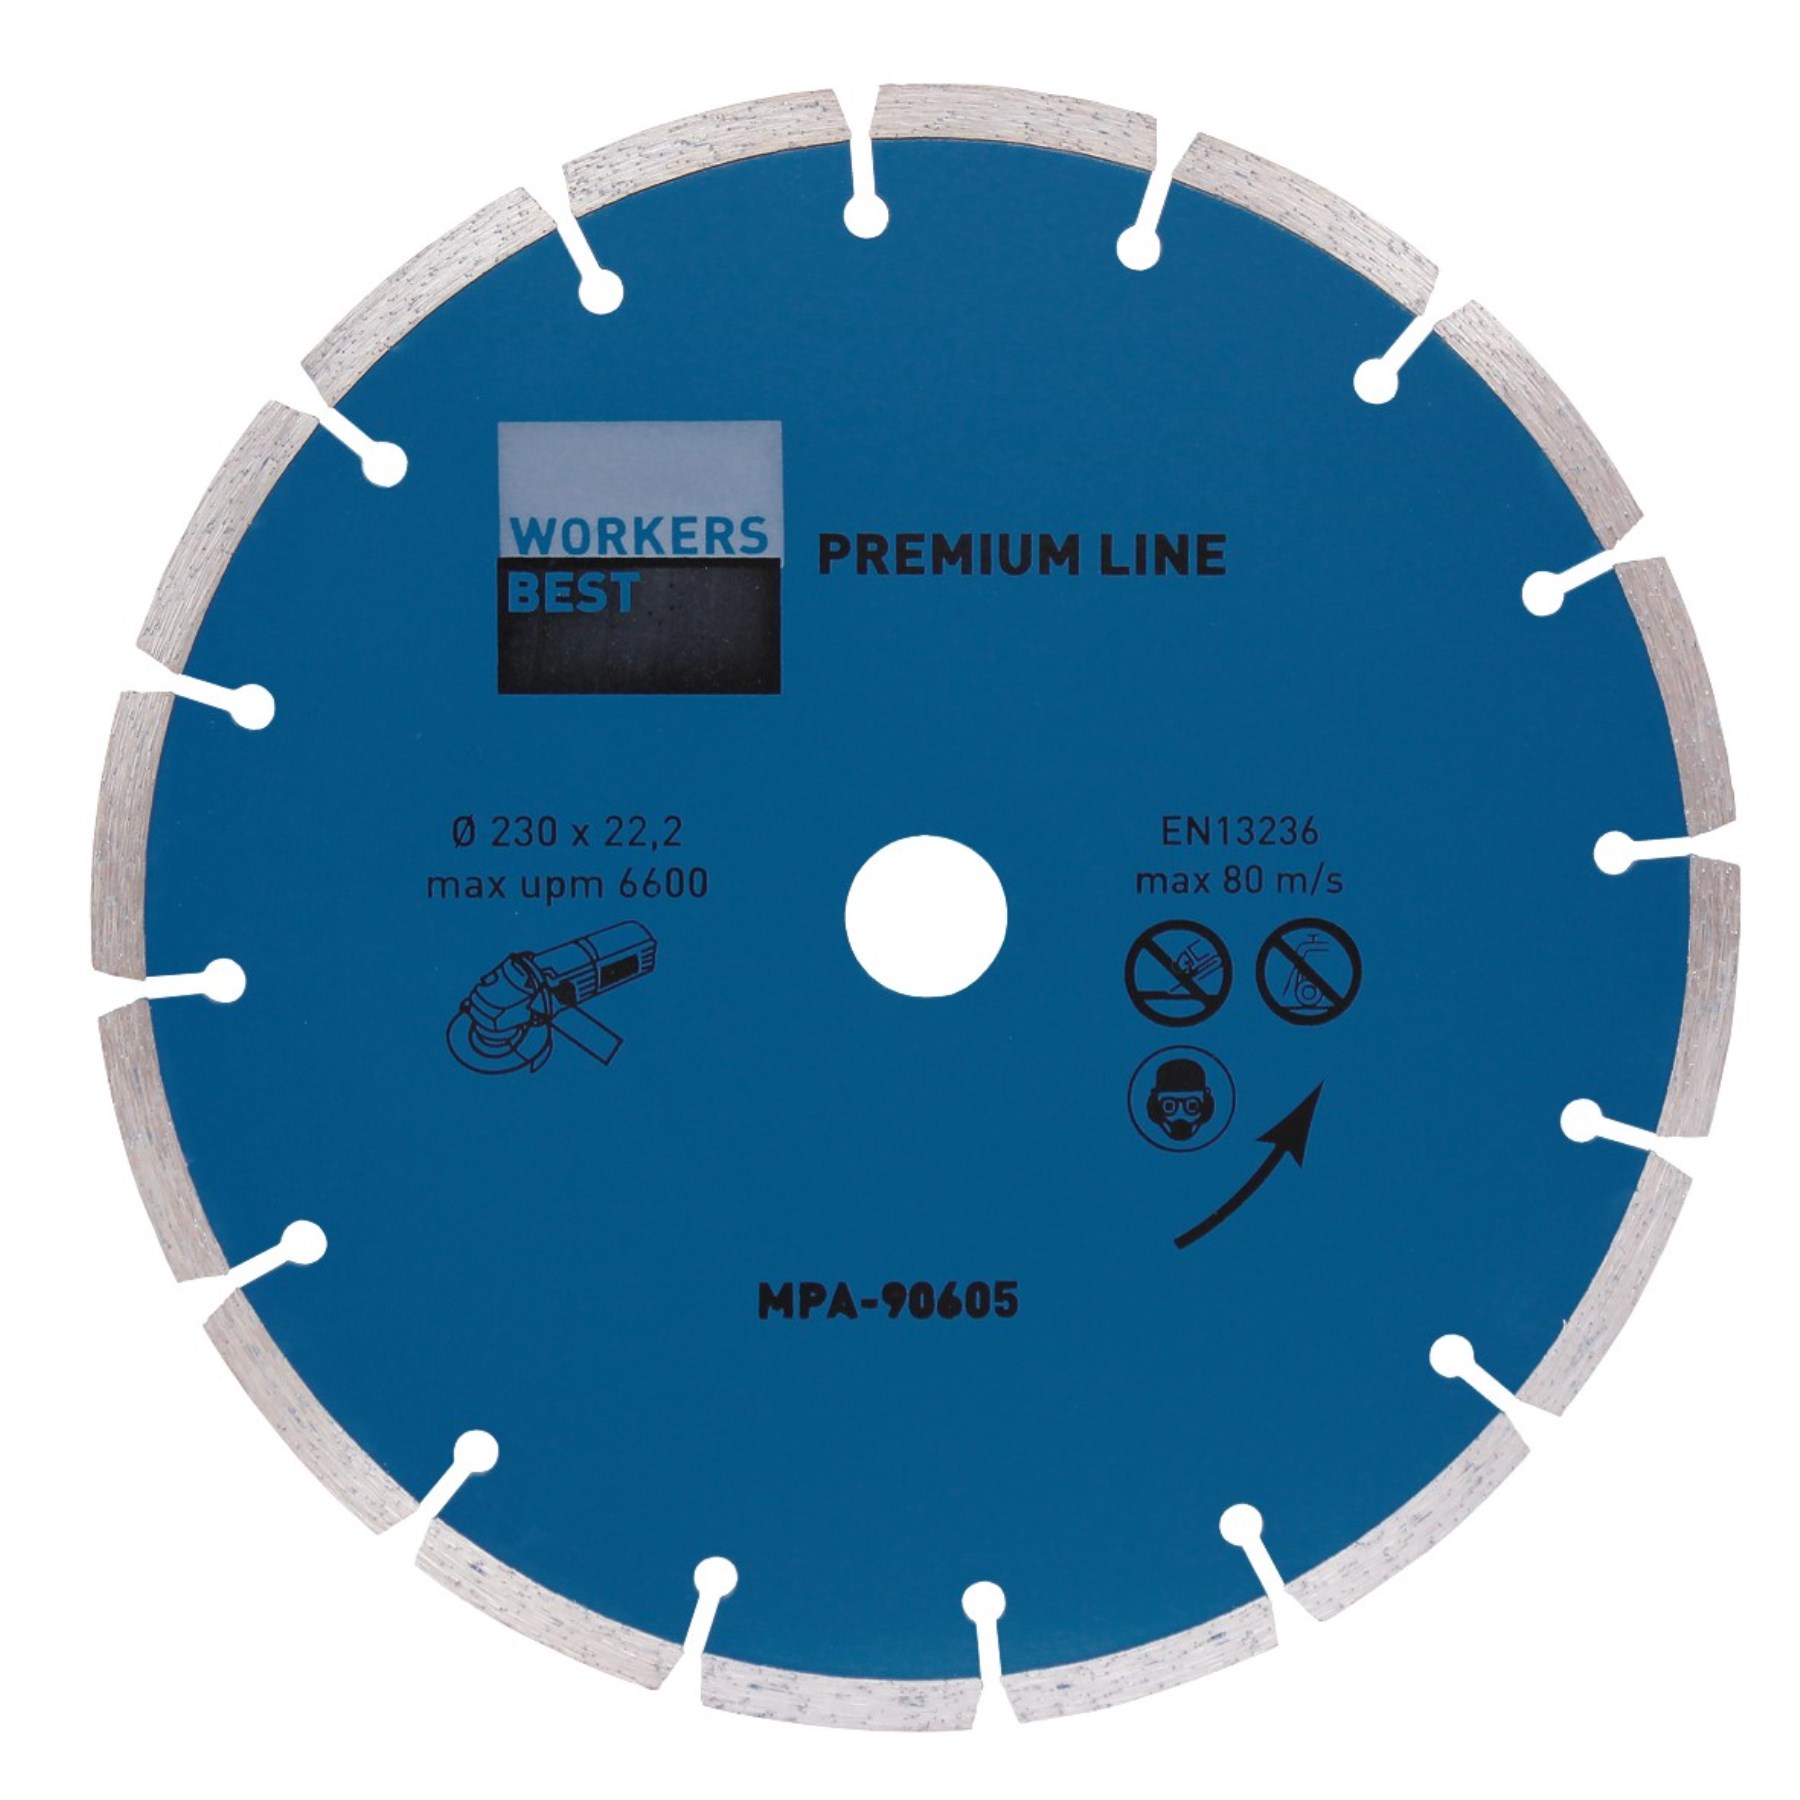 WorkersBest DY-XLD012307-1 diamantový kotouč, 230 mm Premium - Line (modrý)